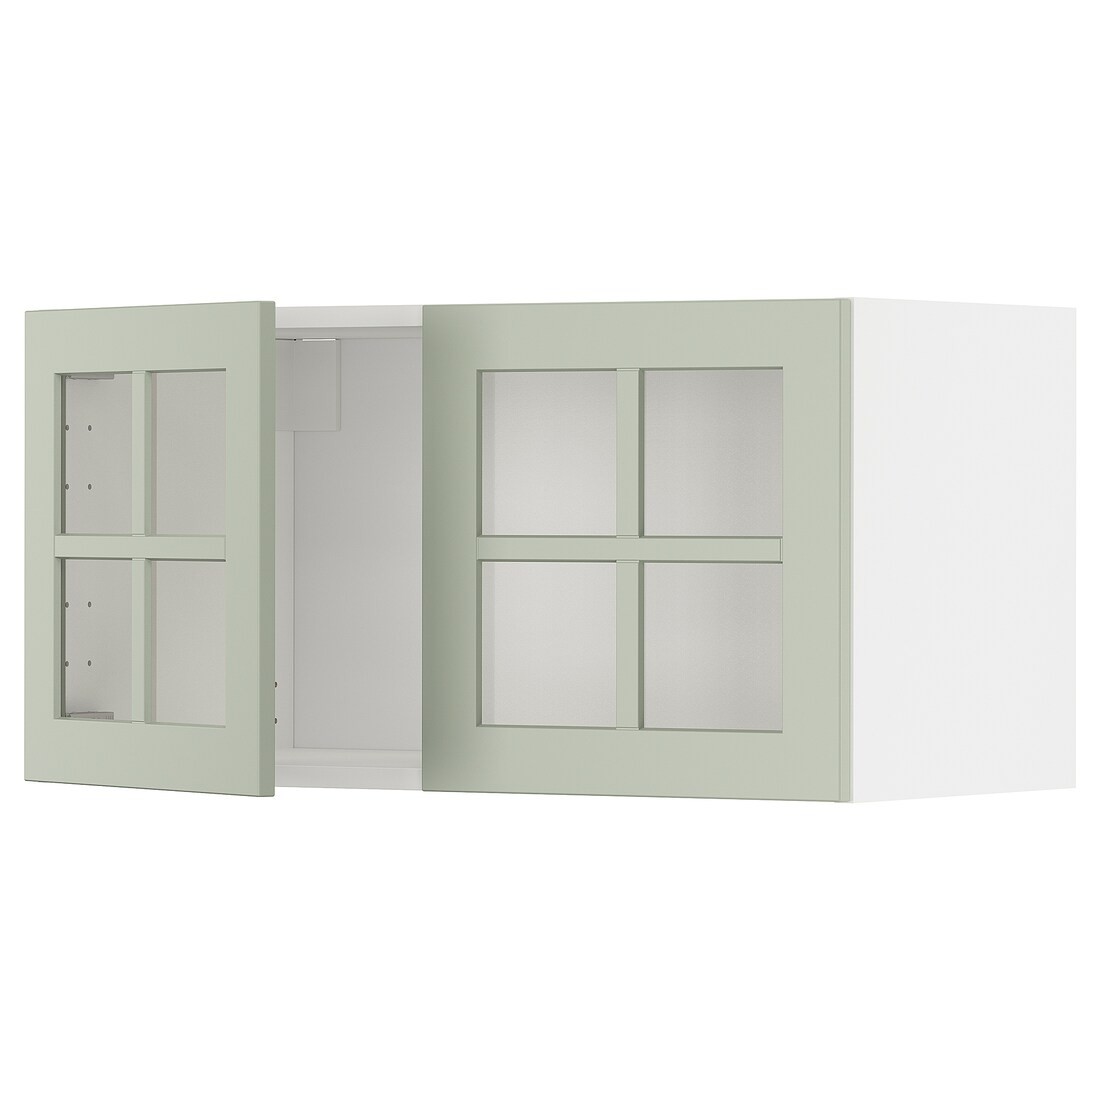 METOD МЕТОД Навесной шкаф / 2 стеклянные дверцы, белый / Stensund светло-зеленый, 80x40 см